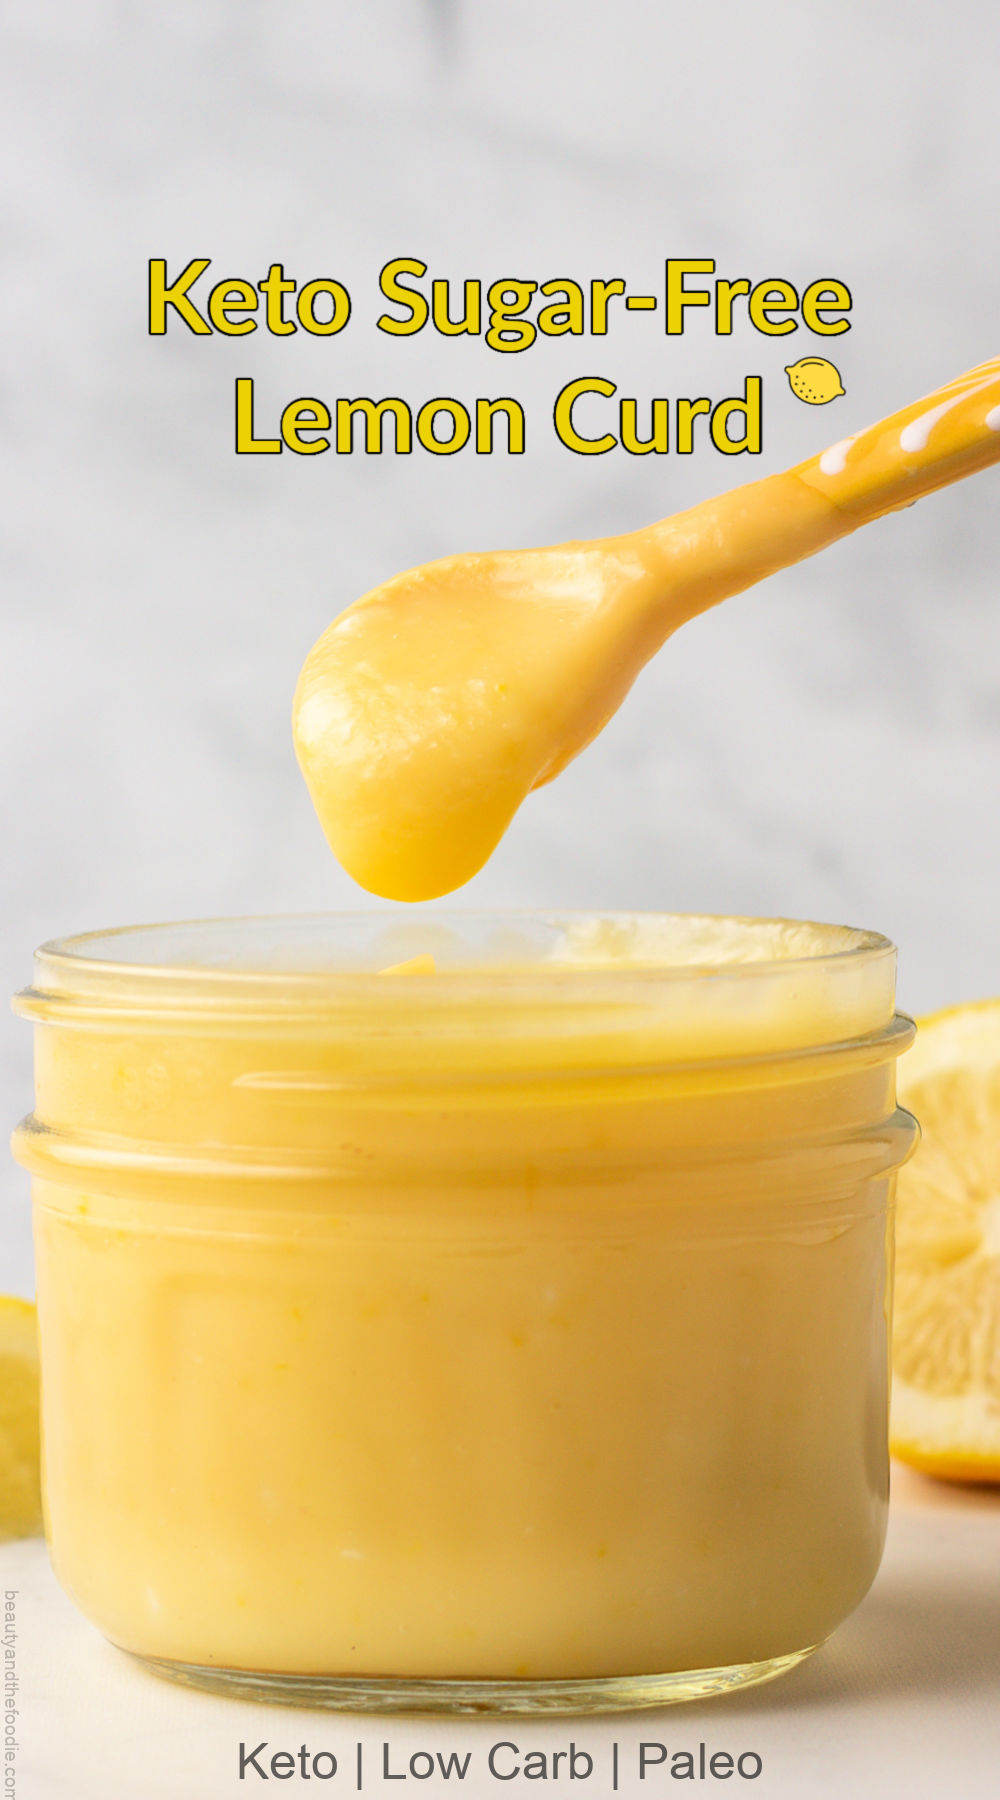 spooning lemon curd out of a jar of keto lemon curd.